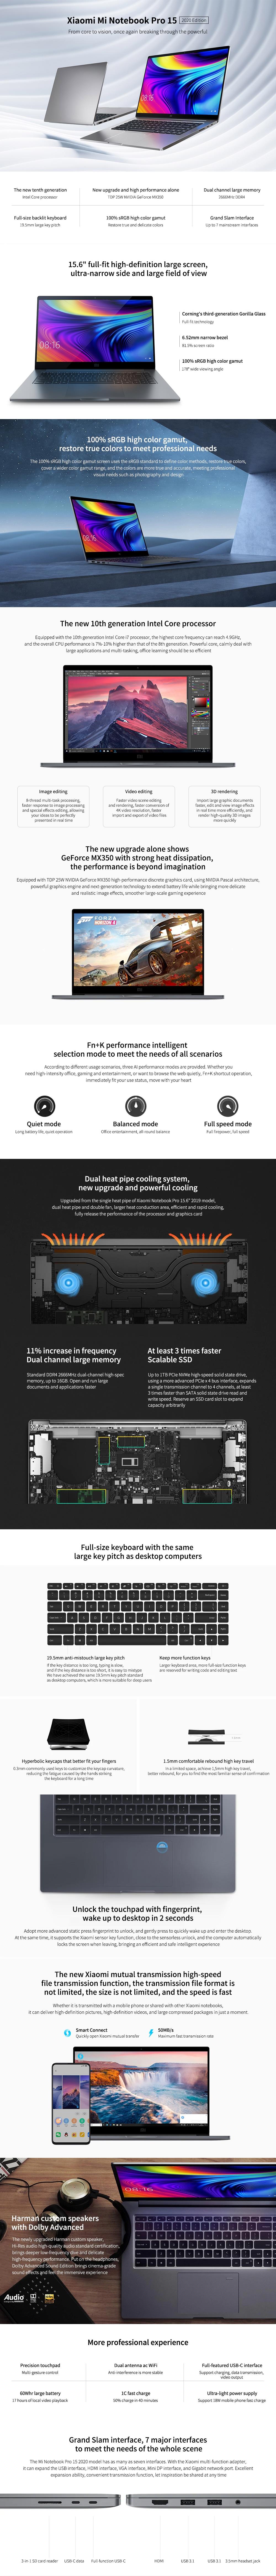 [New Edition] Xiaomi Mi Laptop Pro 15.6 inch Intel Core i7-10510U NVIDIA GeForce MX350 16GB DDR4 RAM 1TB SSD 100% sRGB Fingerprint Backlit Notebook 5